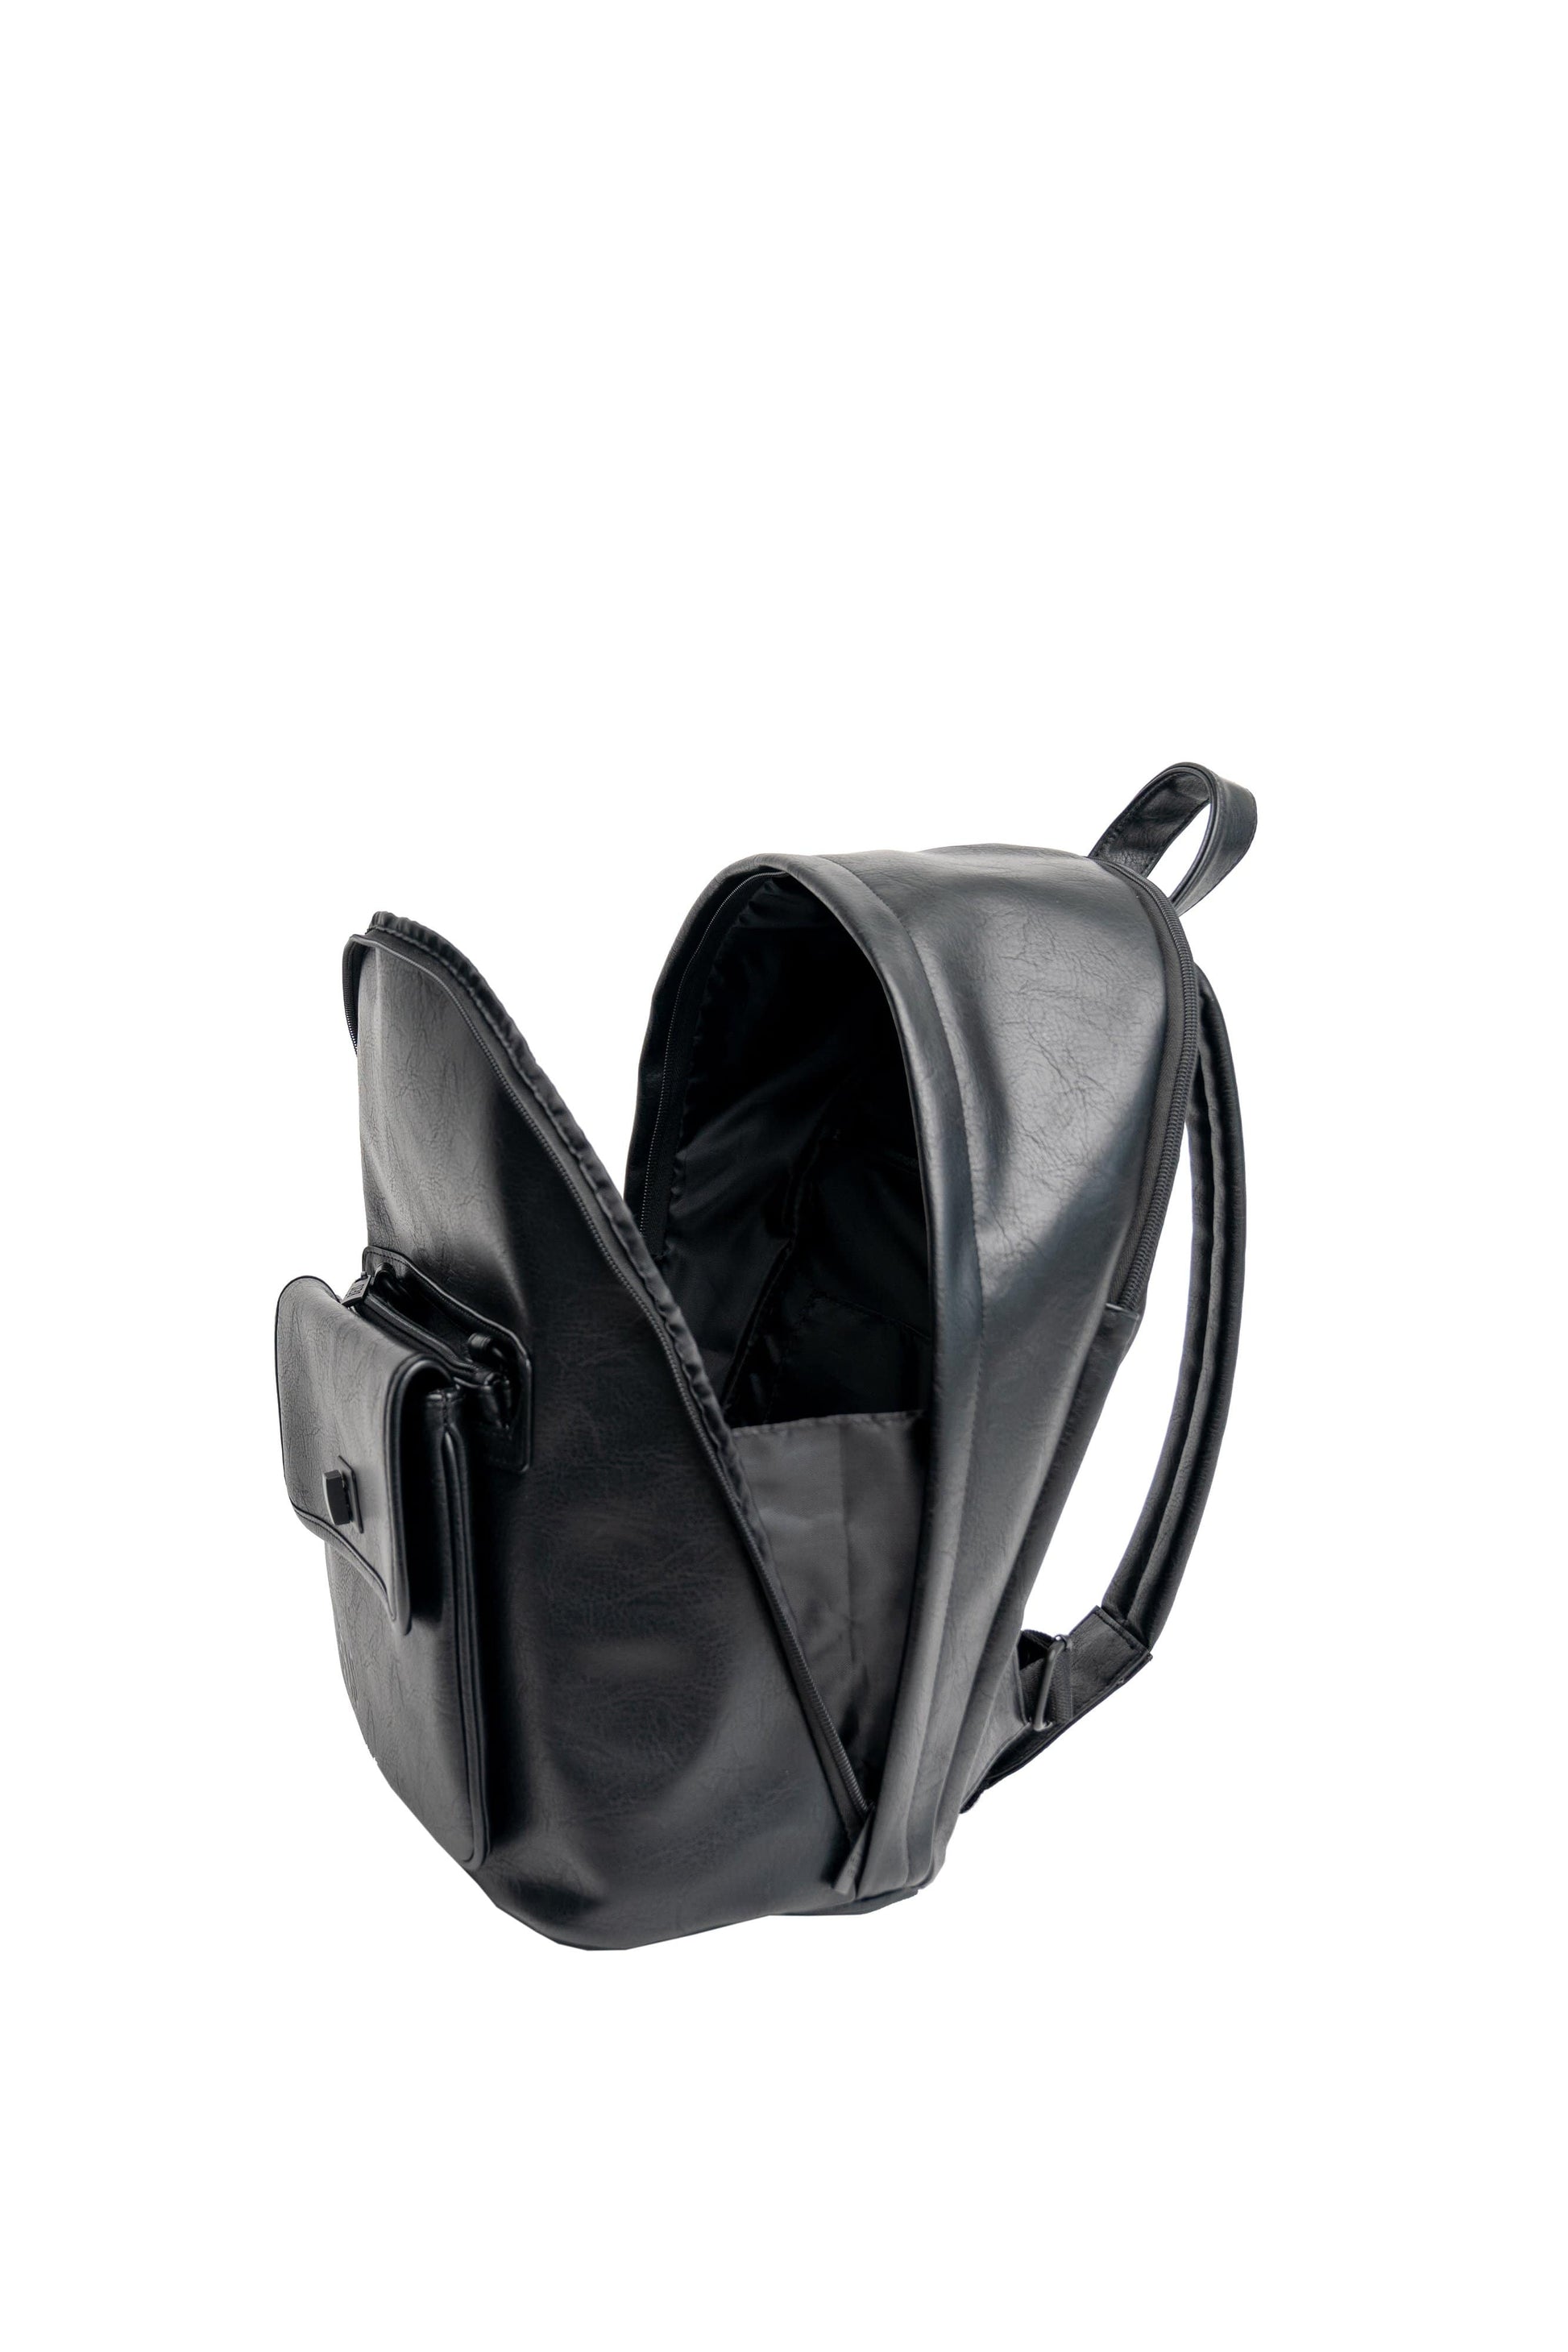 Black Backpack 2 in 1 Side Open